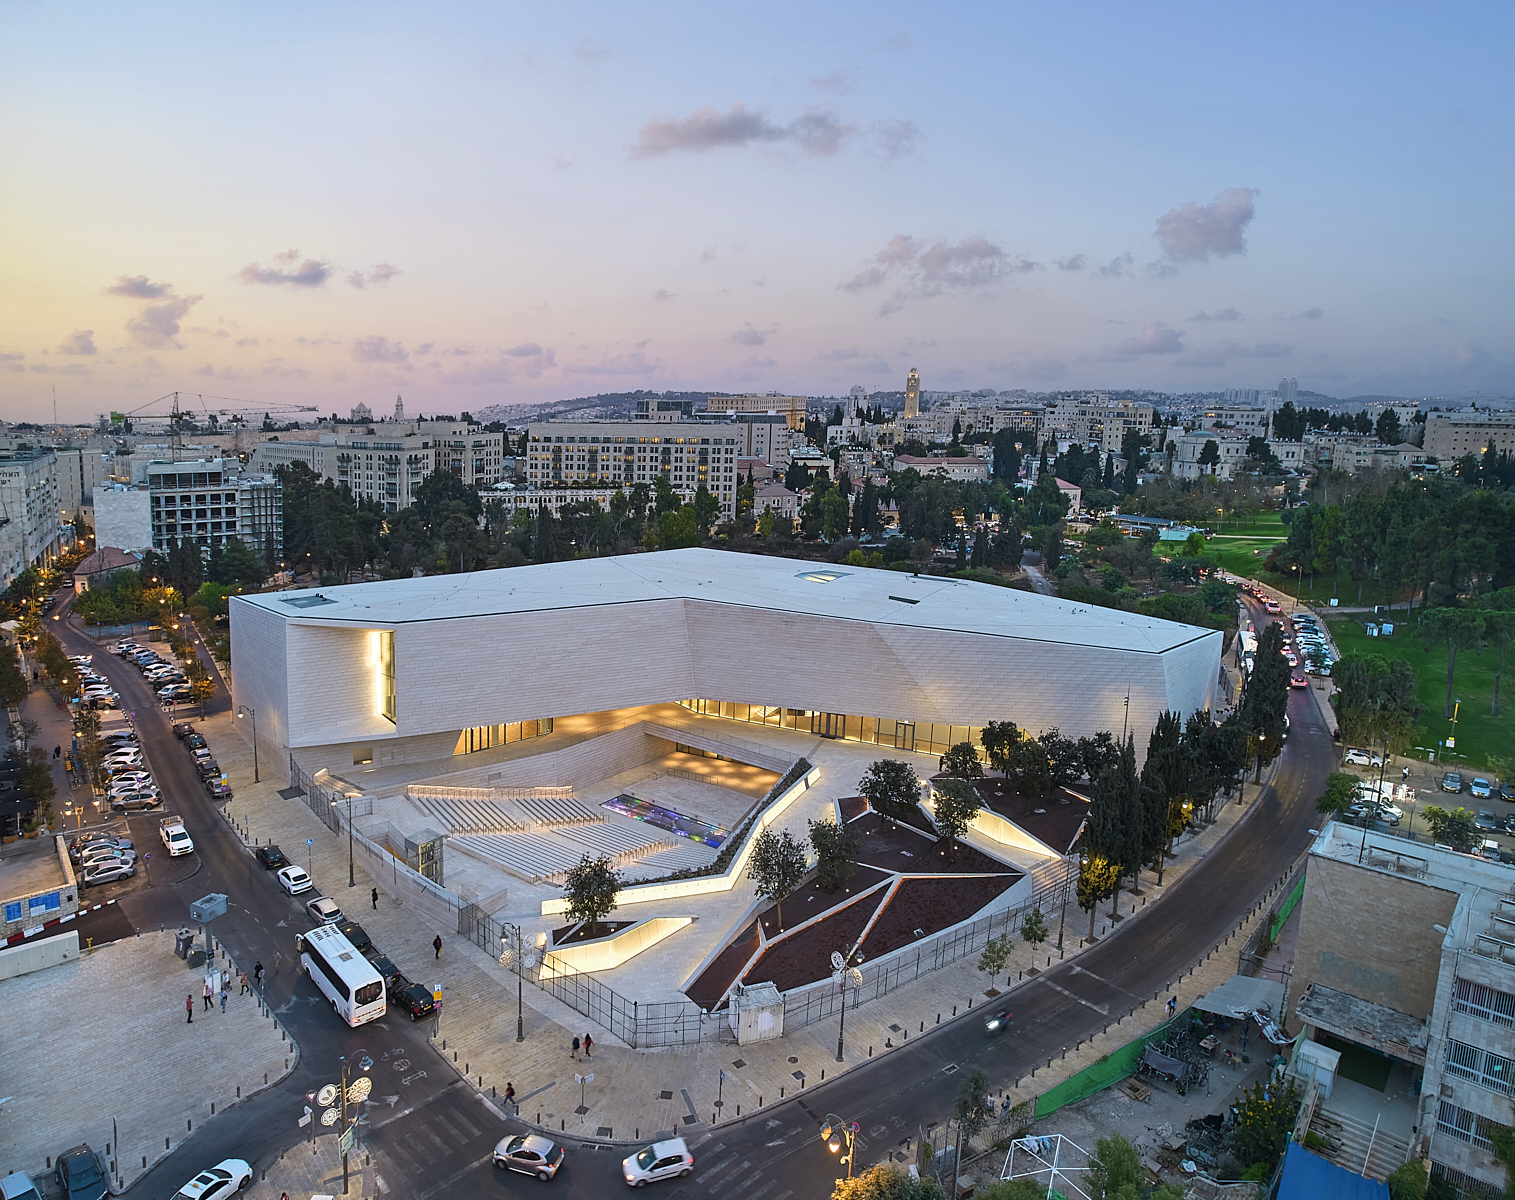 מוזיאון הסובלנות ירושלים מזמין את הקהל הרחב לבקר בתערוכת הצילום ׳מתעדים את ישראל: 75 שנות חזון׳